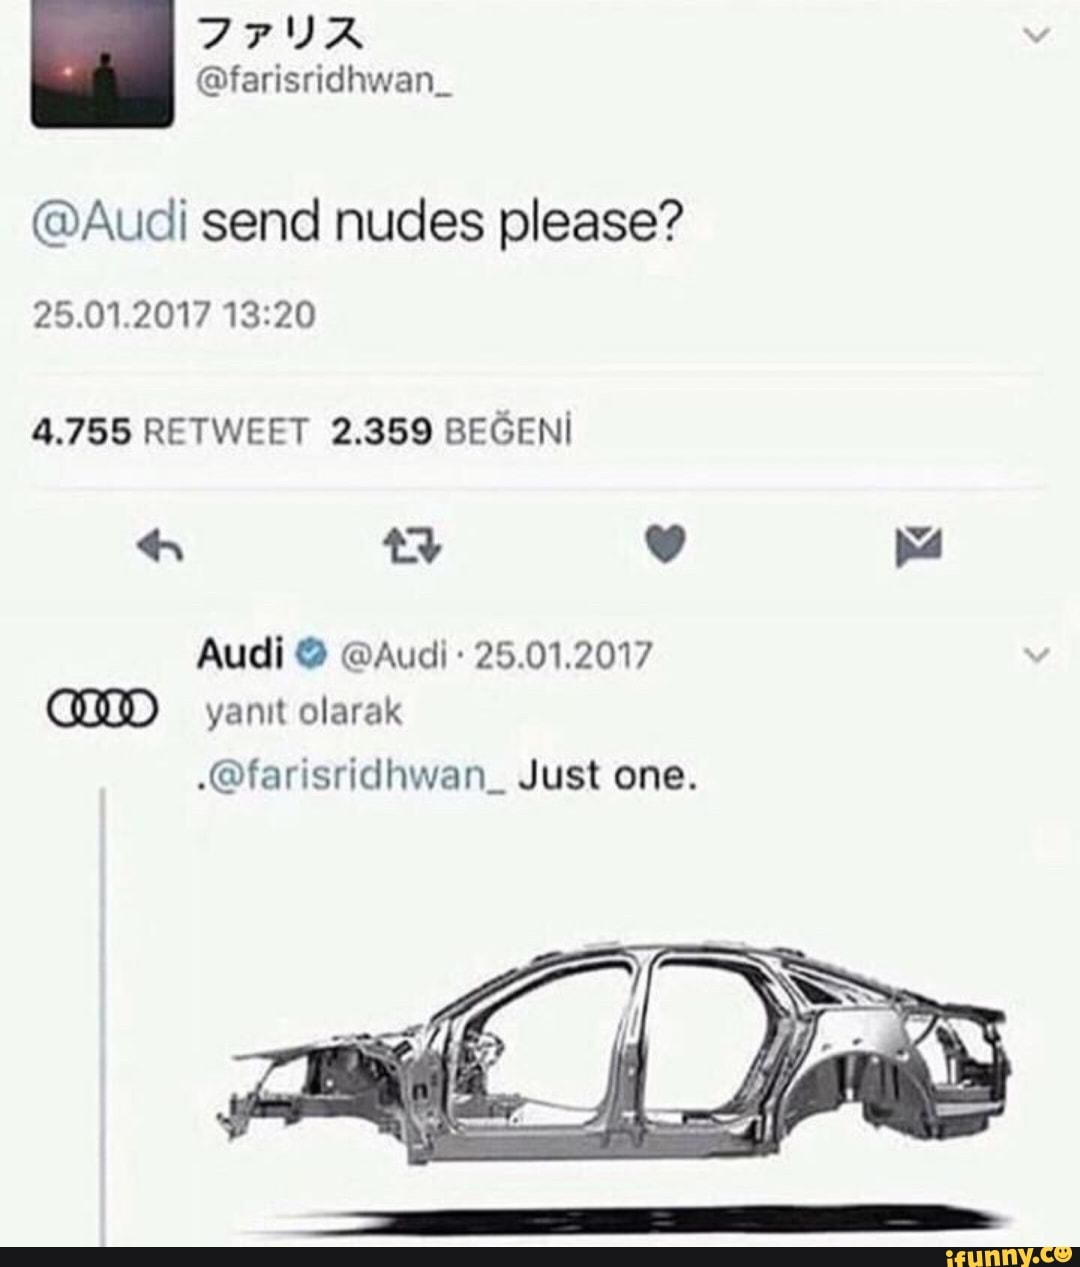 Audi nudes